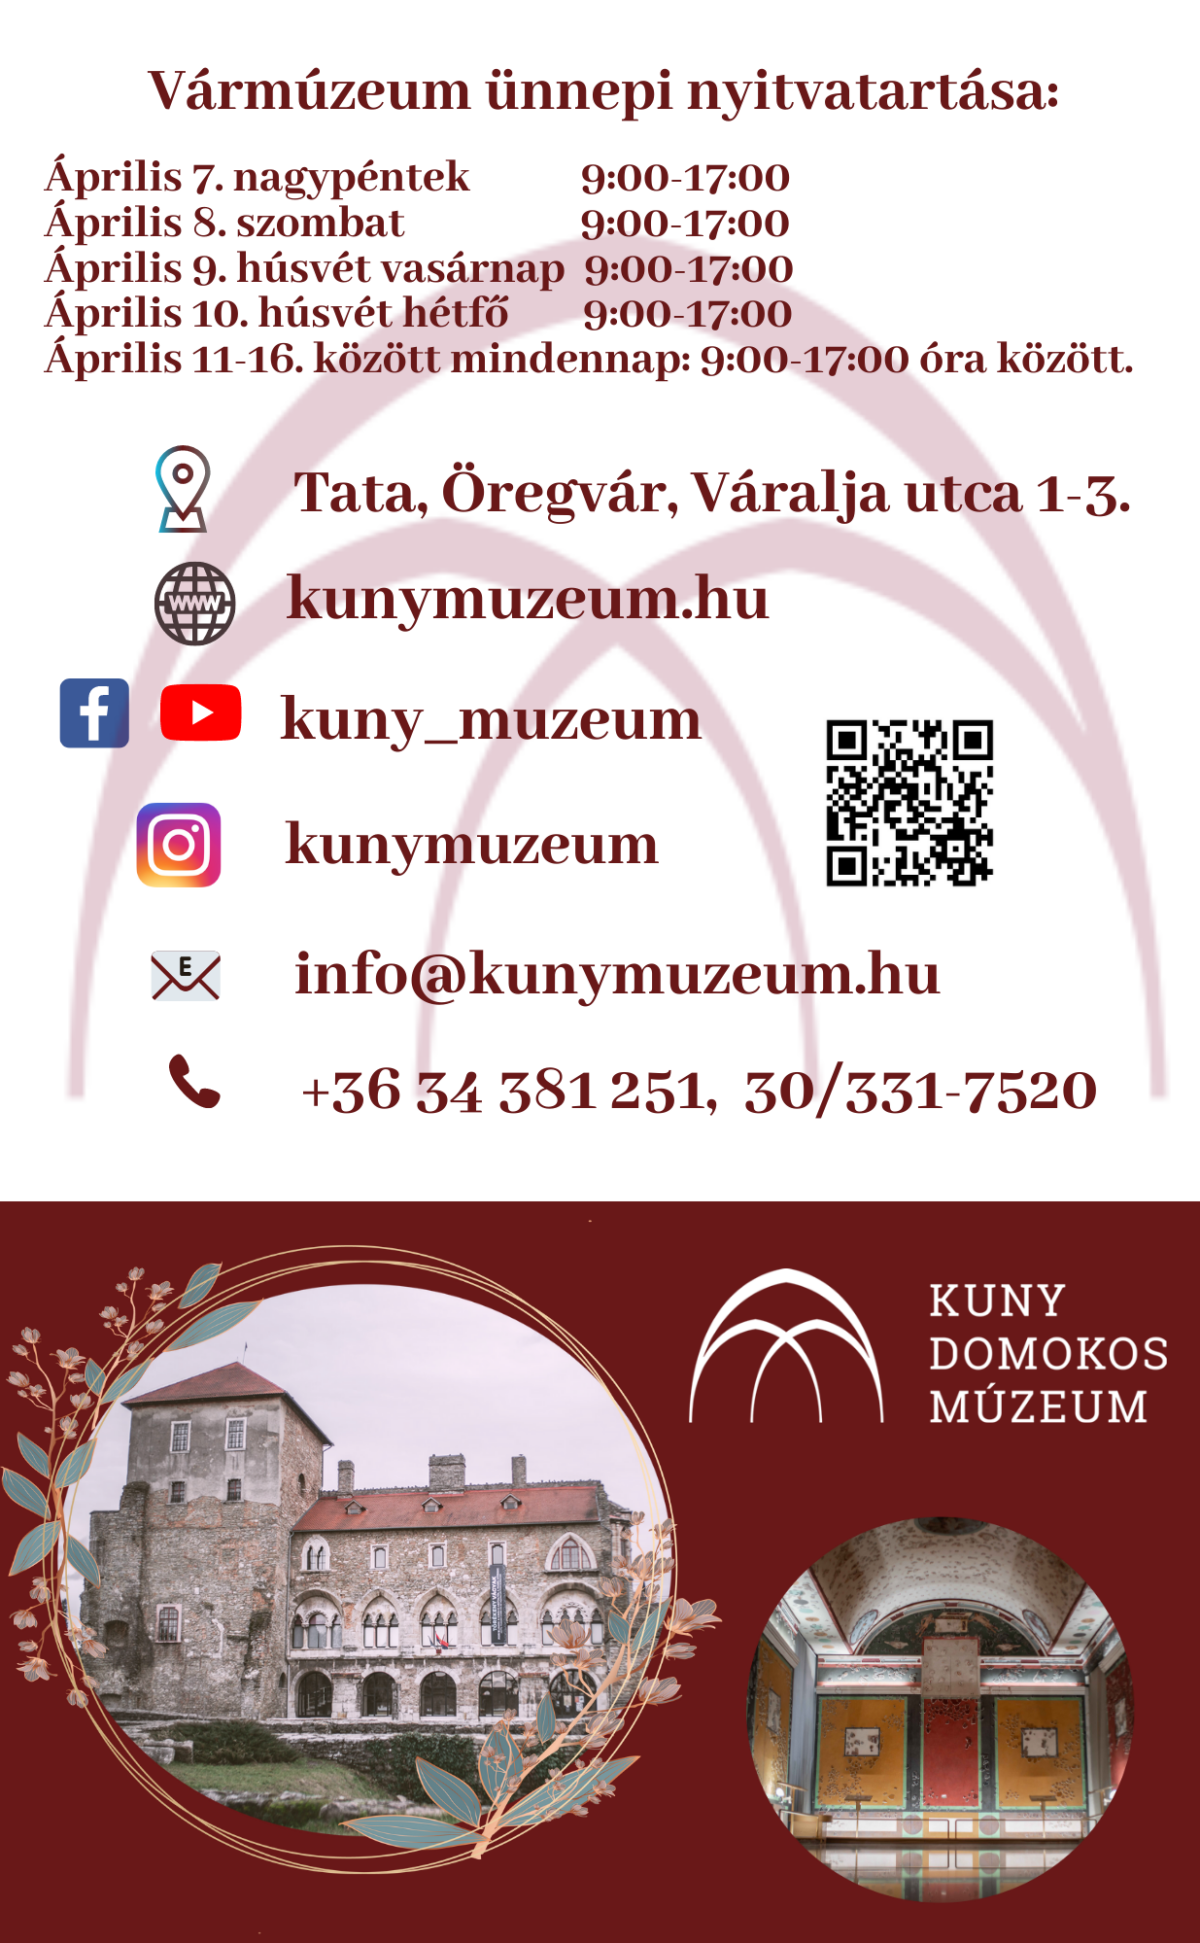 Kiemelt kép a A hosszú hétvégén is várja a látogatókat a tatai múzeum című bejegyzéshez